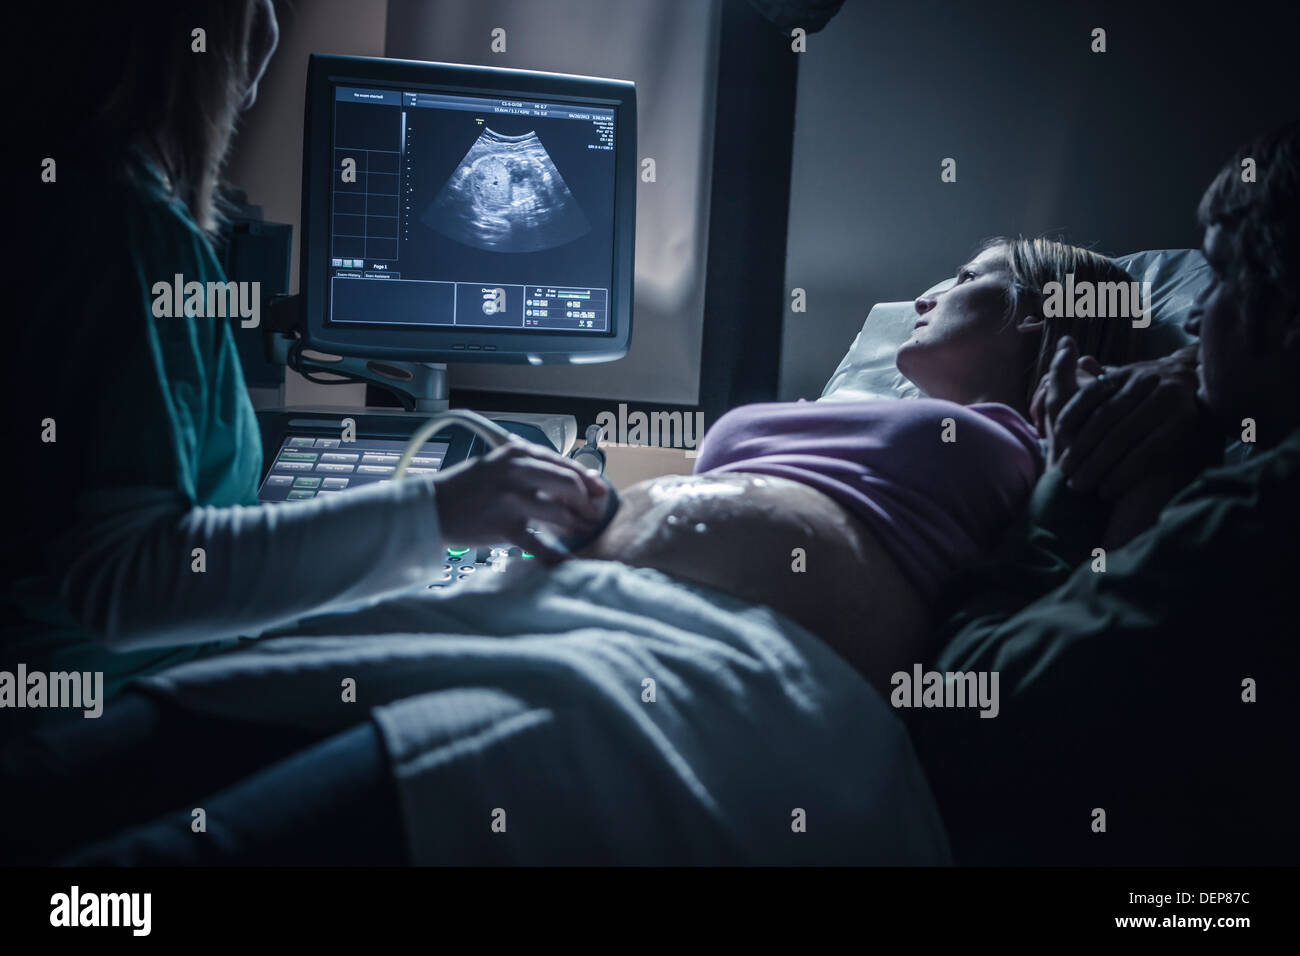 Pregnant couple having sonogram Stock Photo